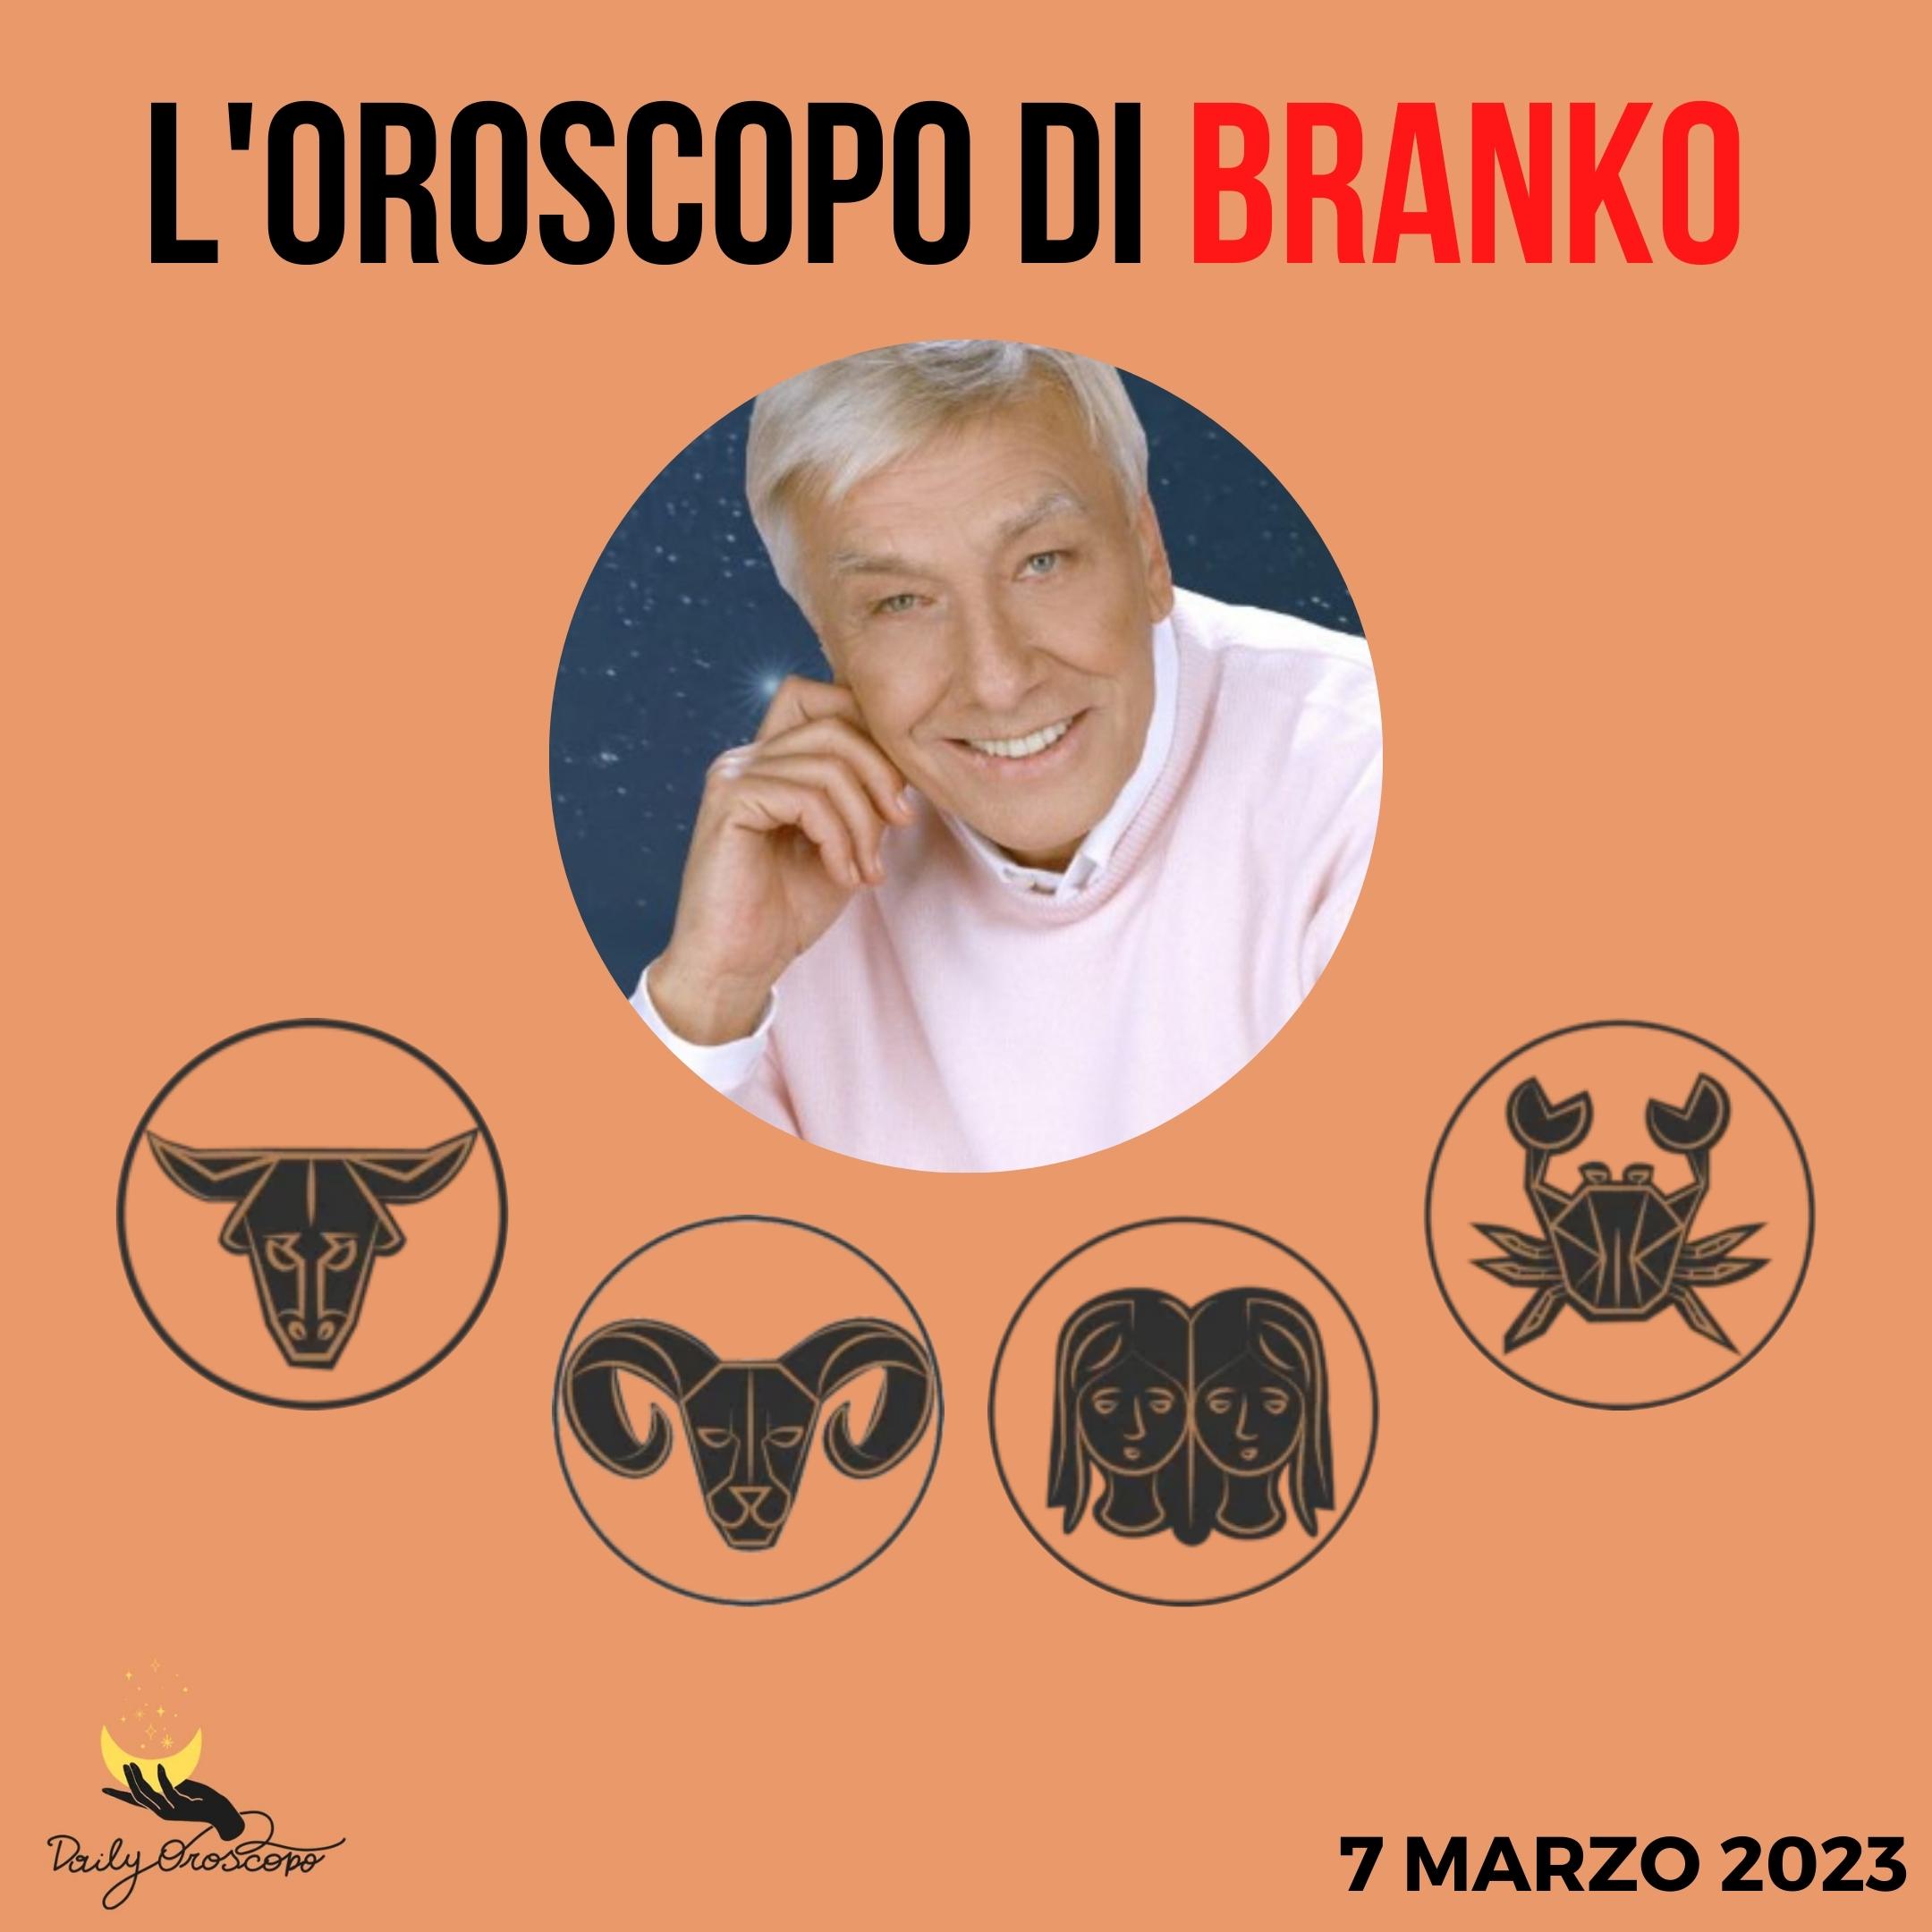 Oroscopo Branko di oggi 7 marzo: Toro, Ariete, Gemelli, Cancro